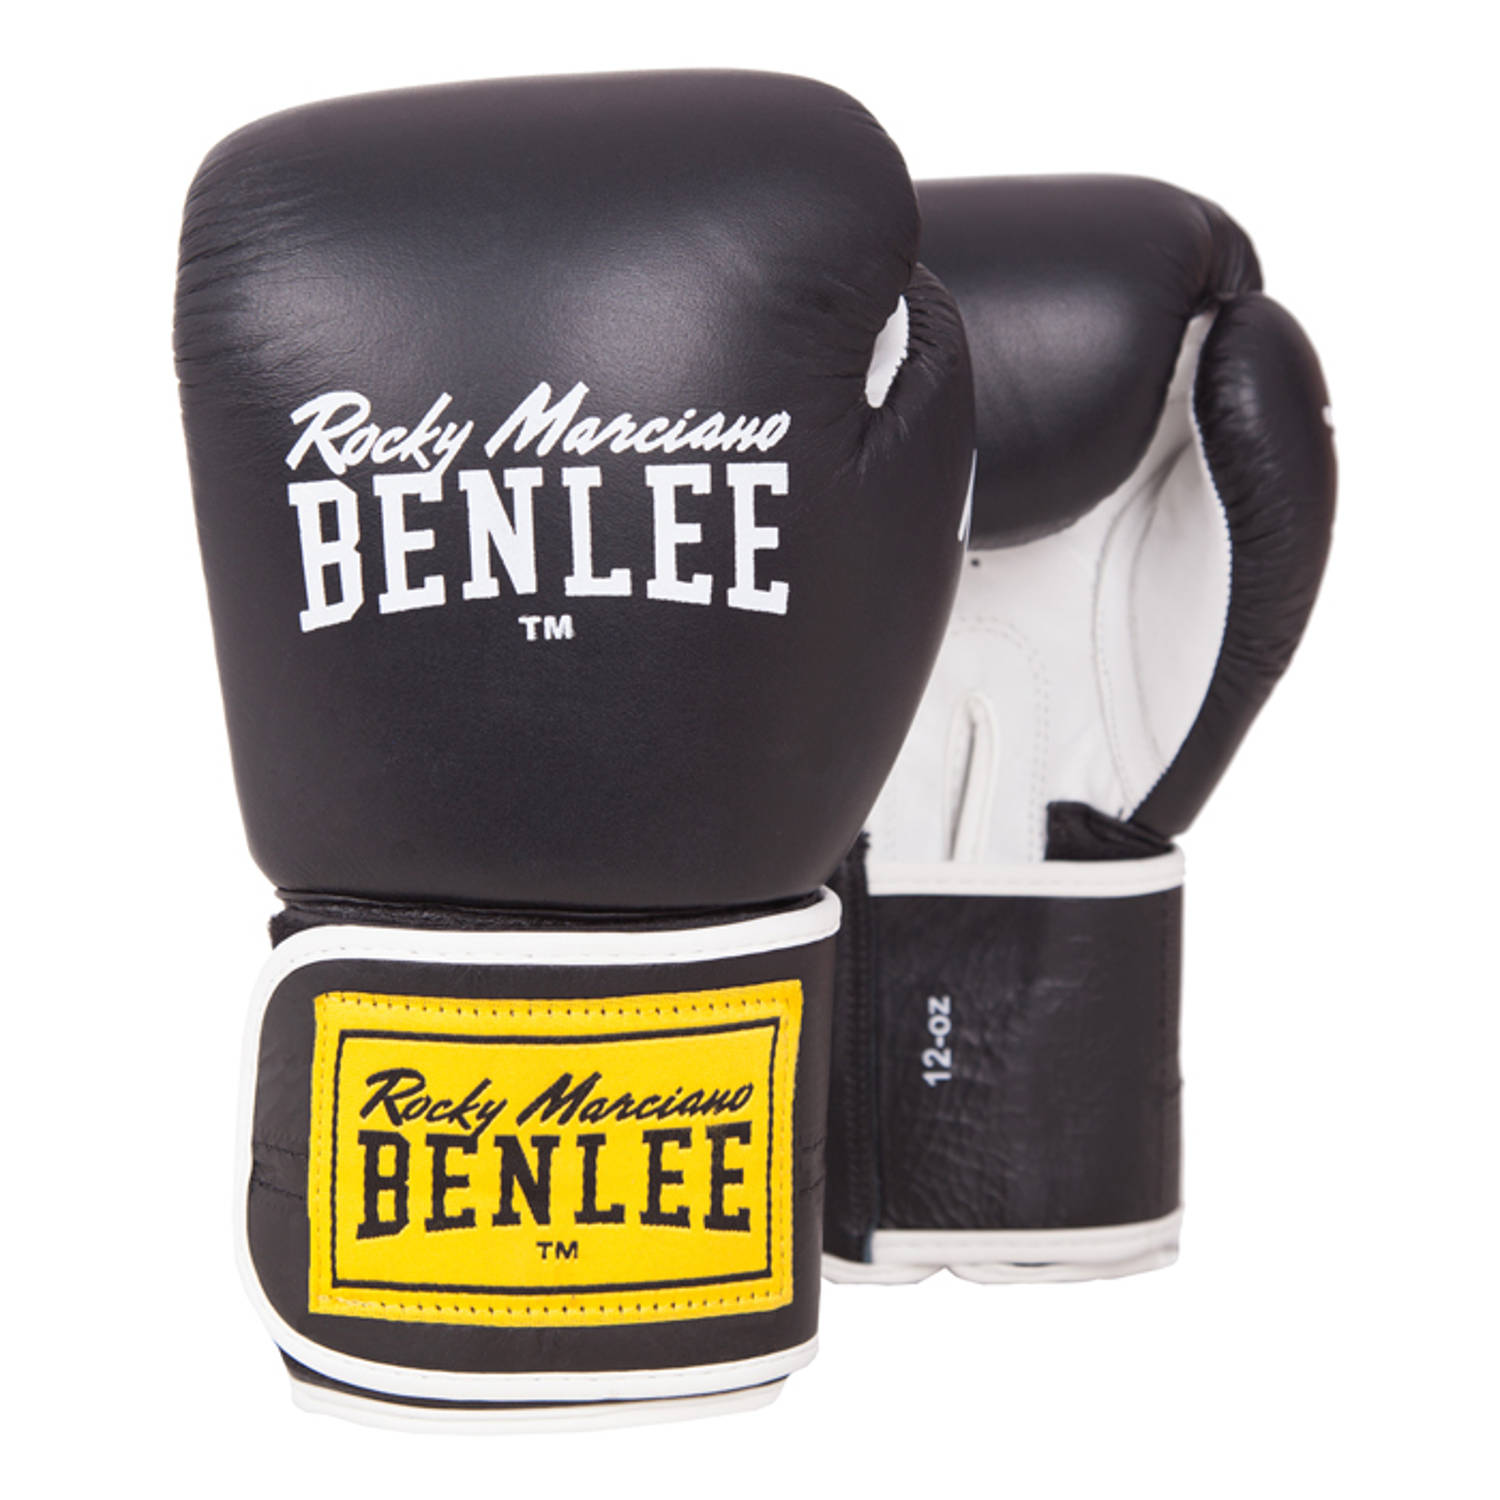 Benlee Vechtsporthandschoenen - Unisex - zwart/wit